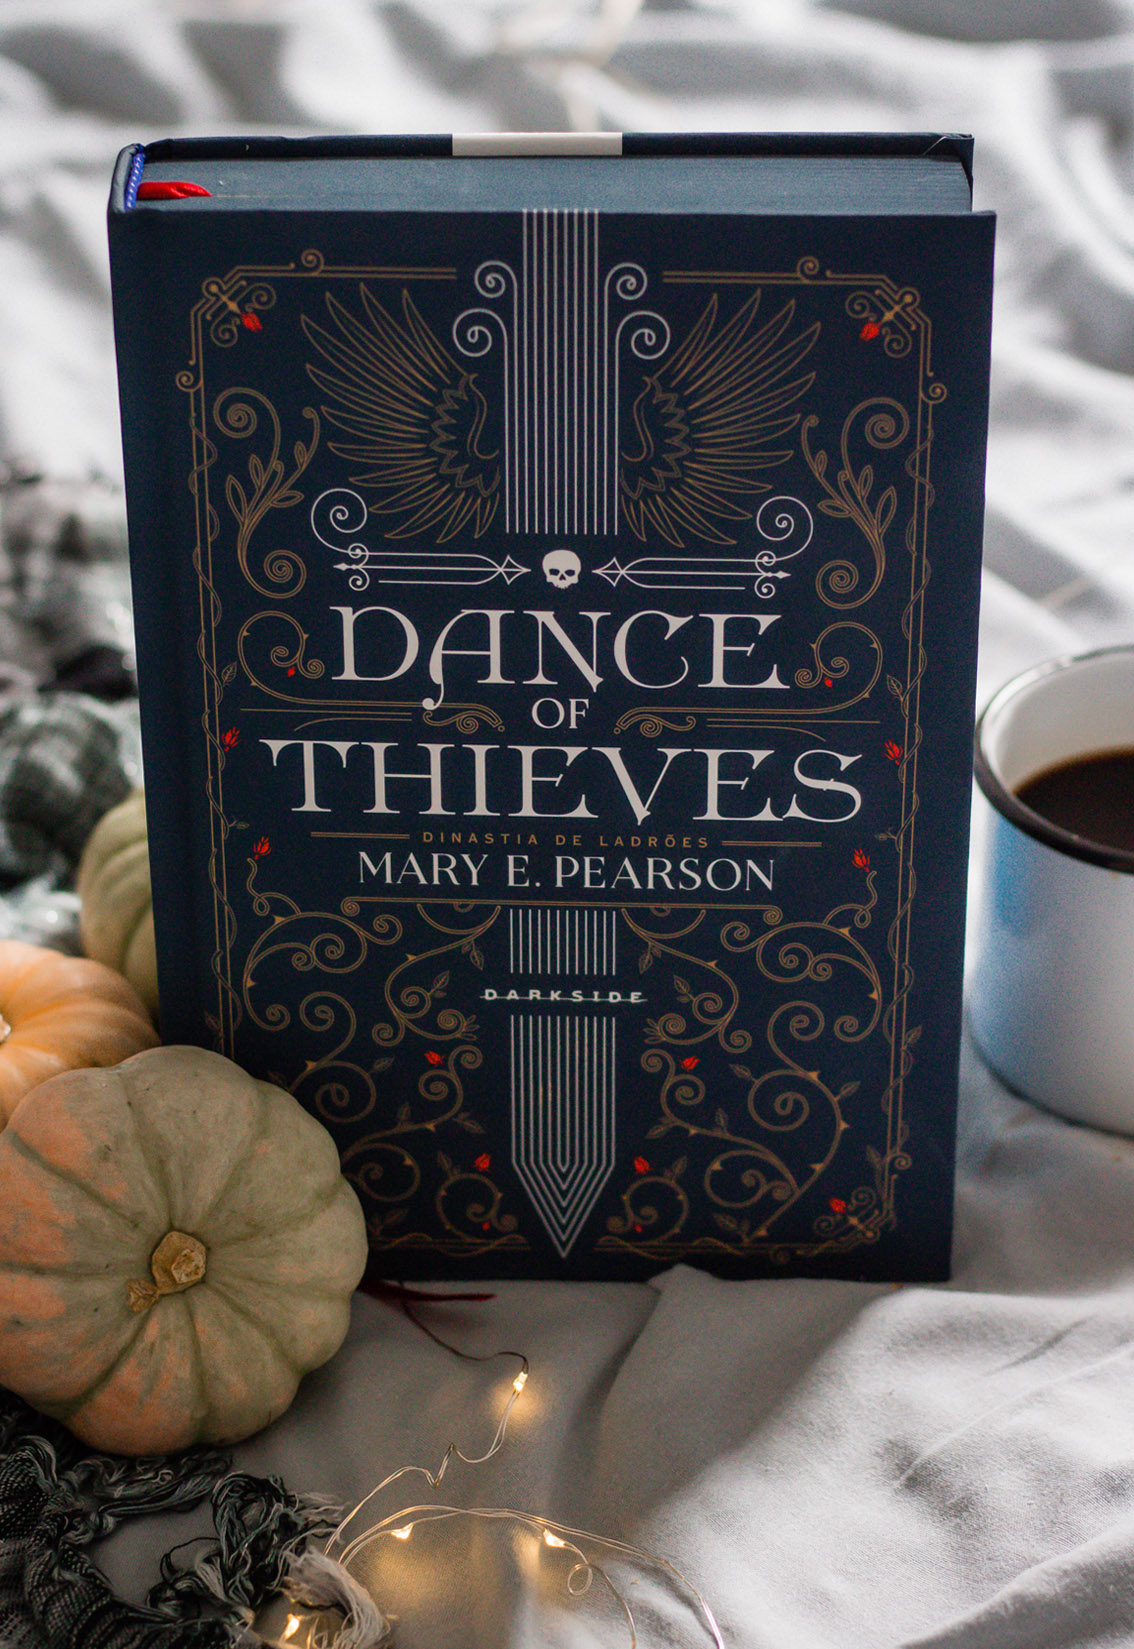 Resenha de livro Dance of thieves darkside books